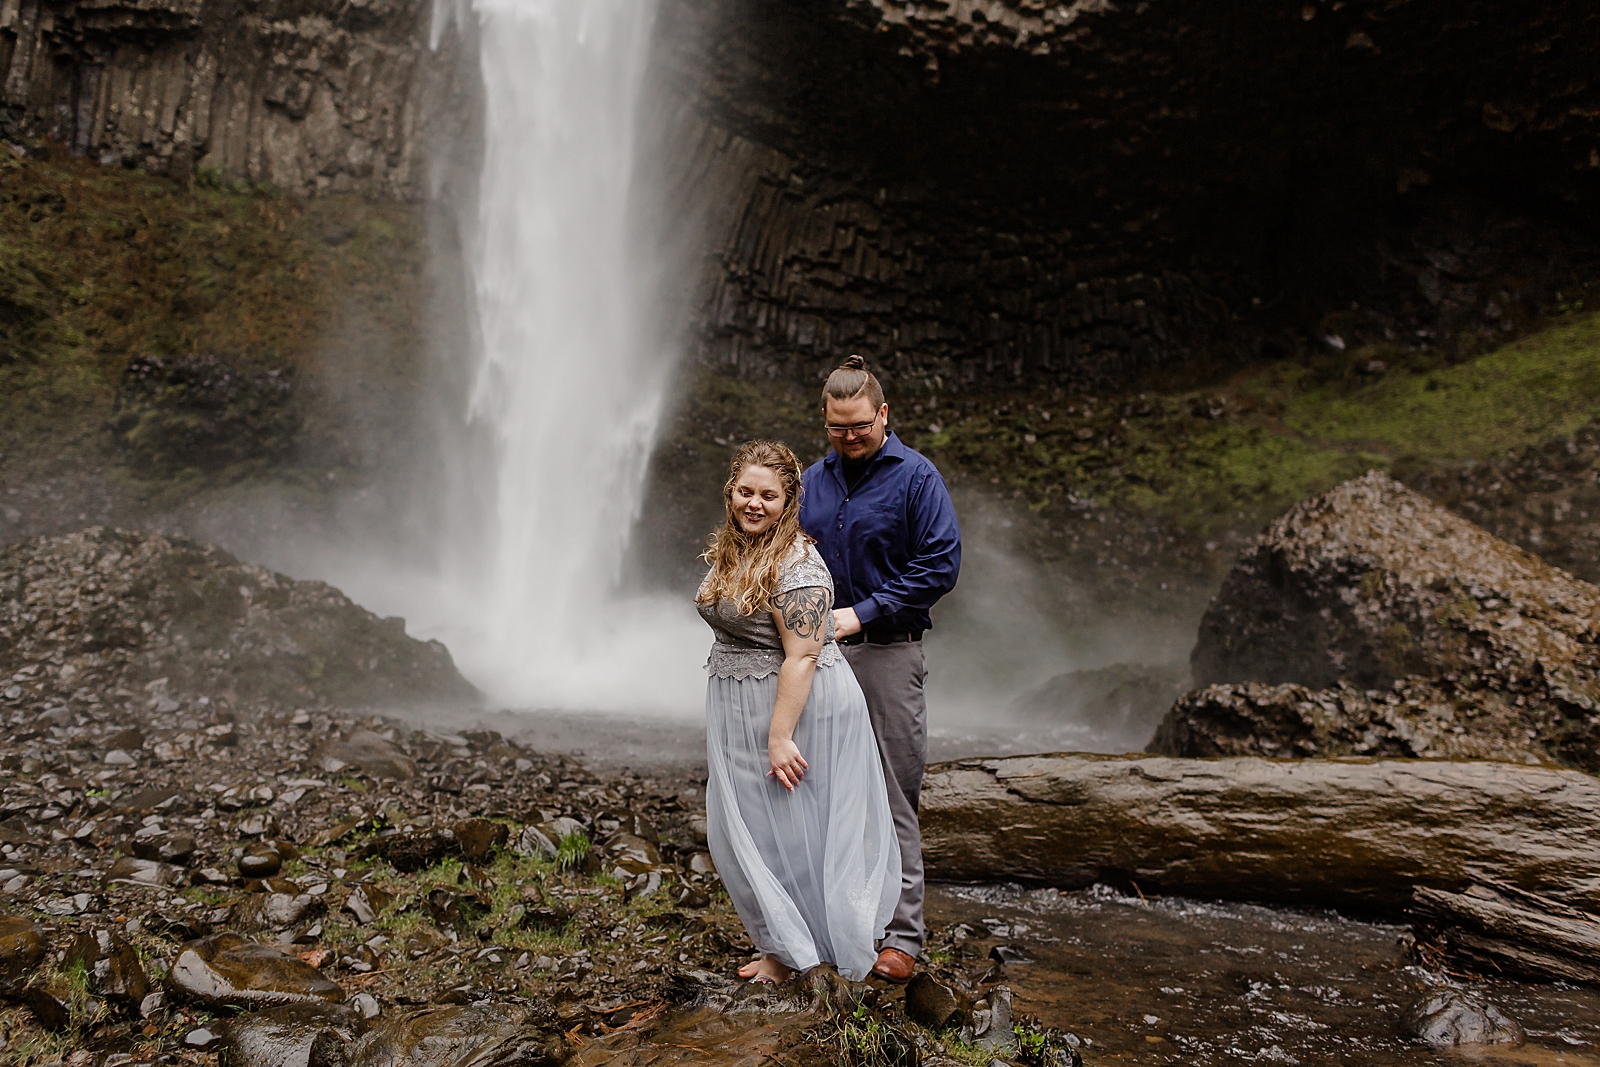 Couple walking on wet rock bottom of waterfall 